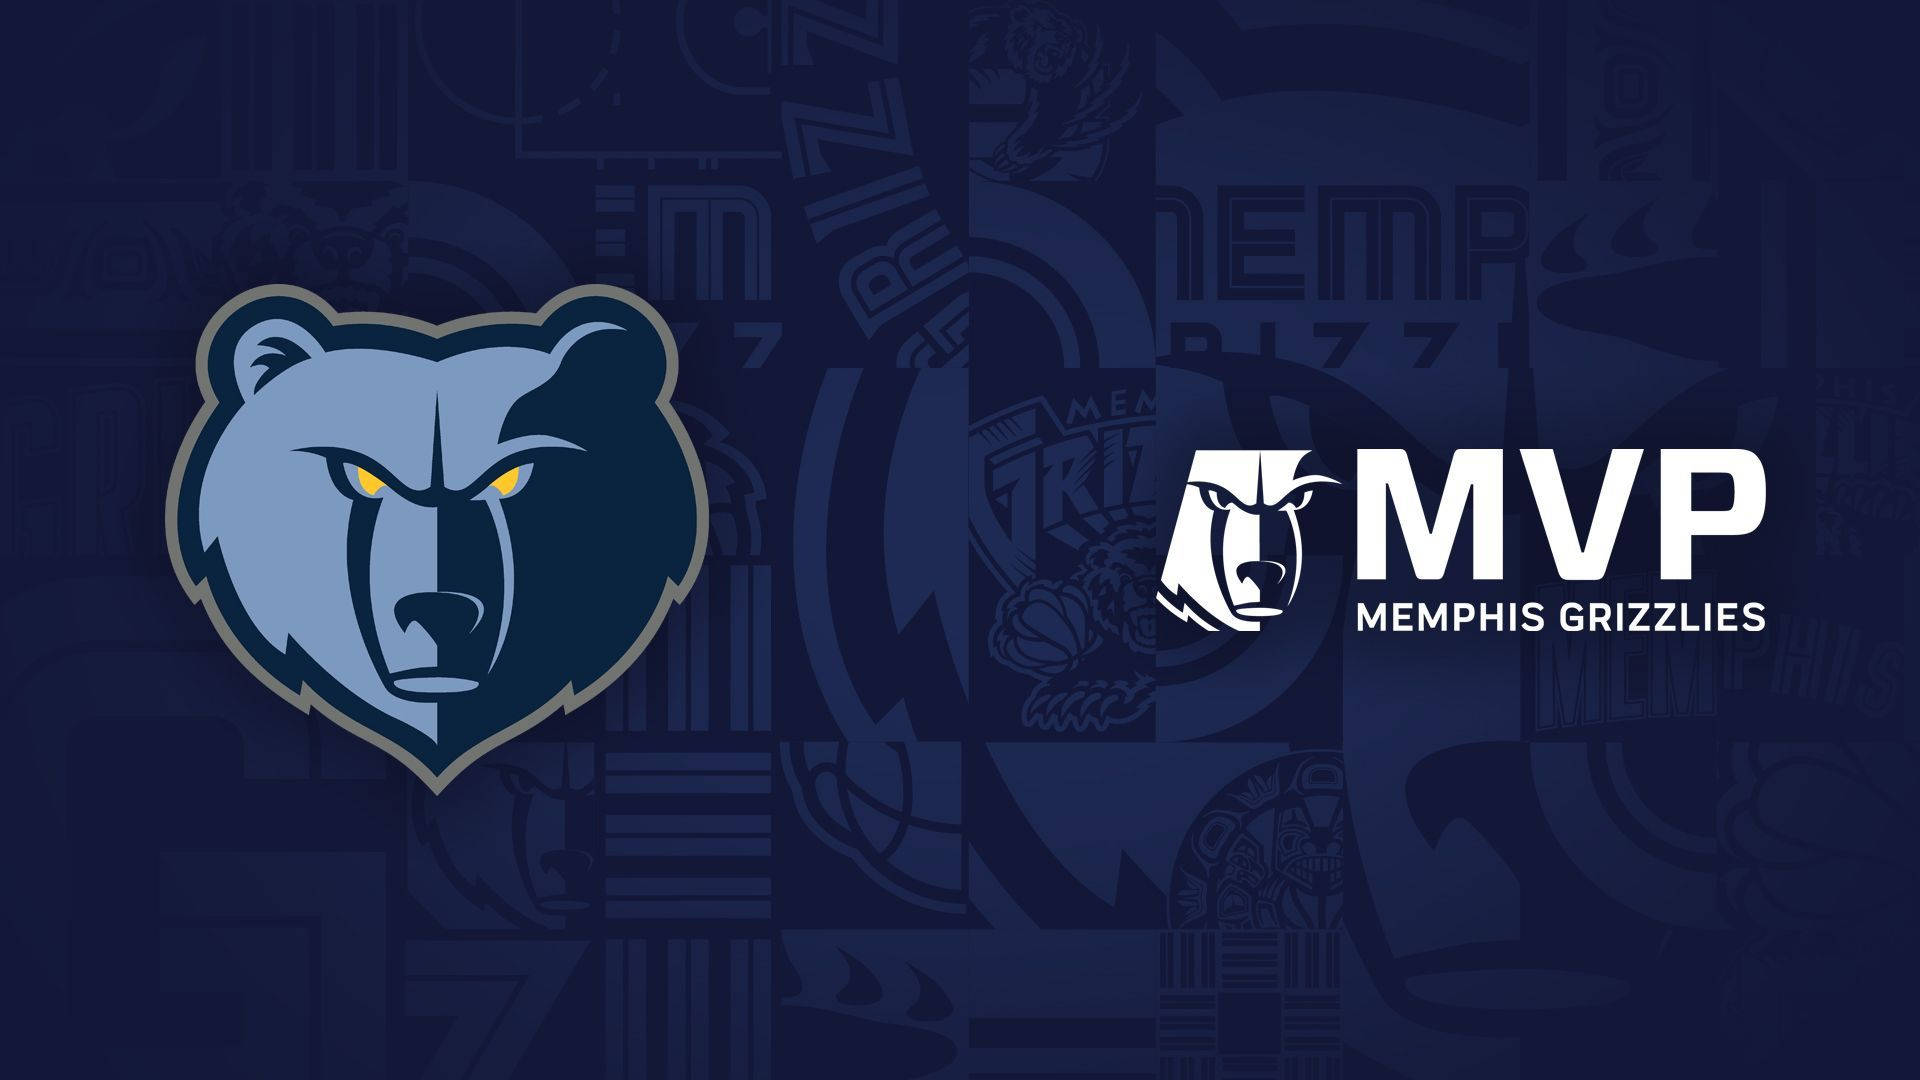 Nbamvp Memphis Grizzlies Logo Blir En Perfekt Datorskärms- Eller Mobilbakgrund För Alla Basketfans Därute! Wallpaper